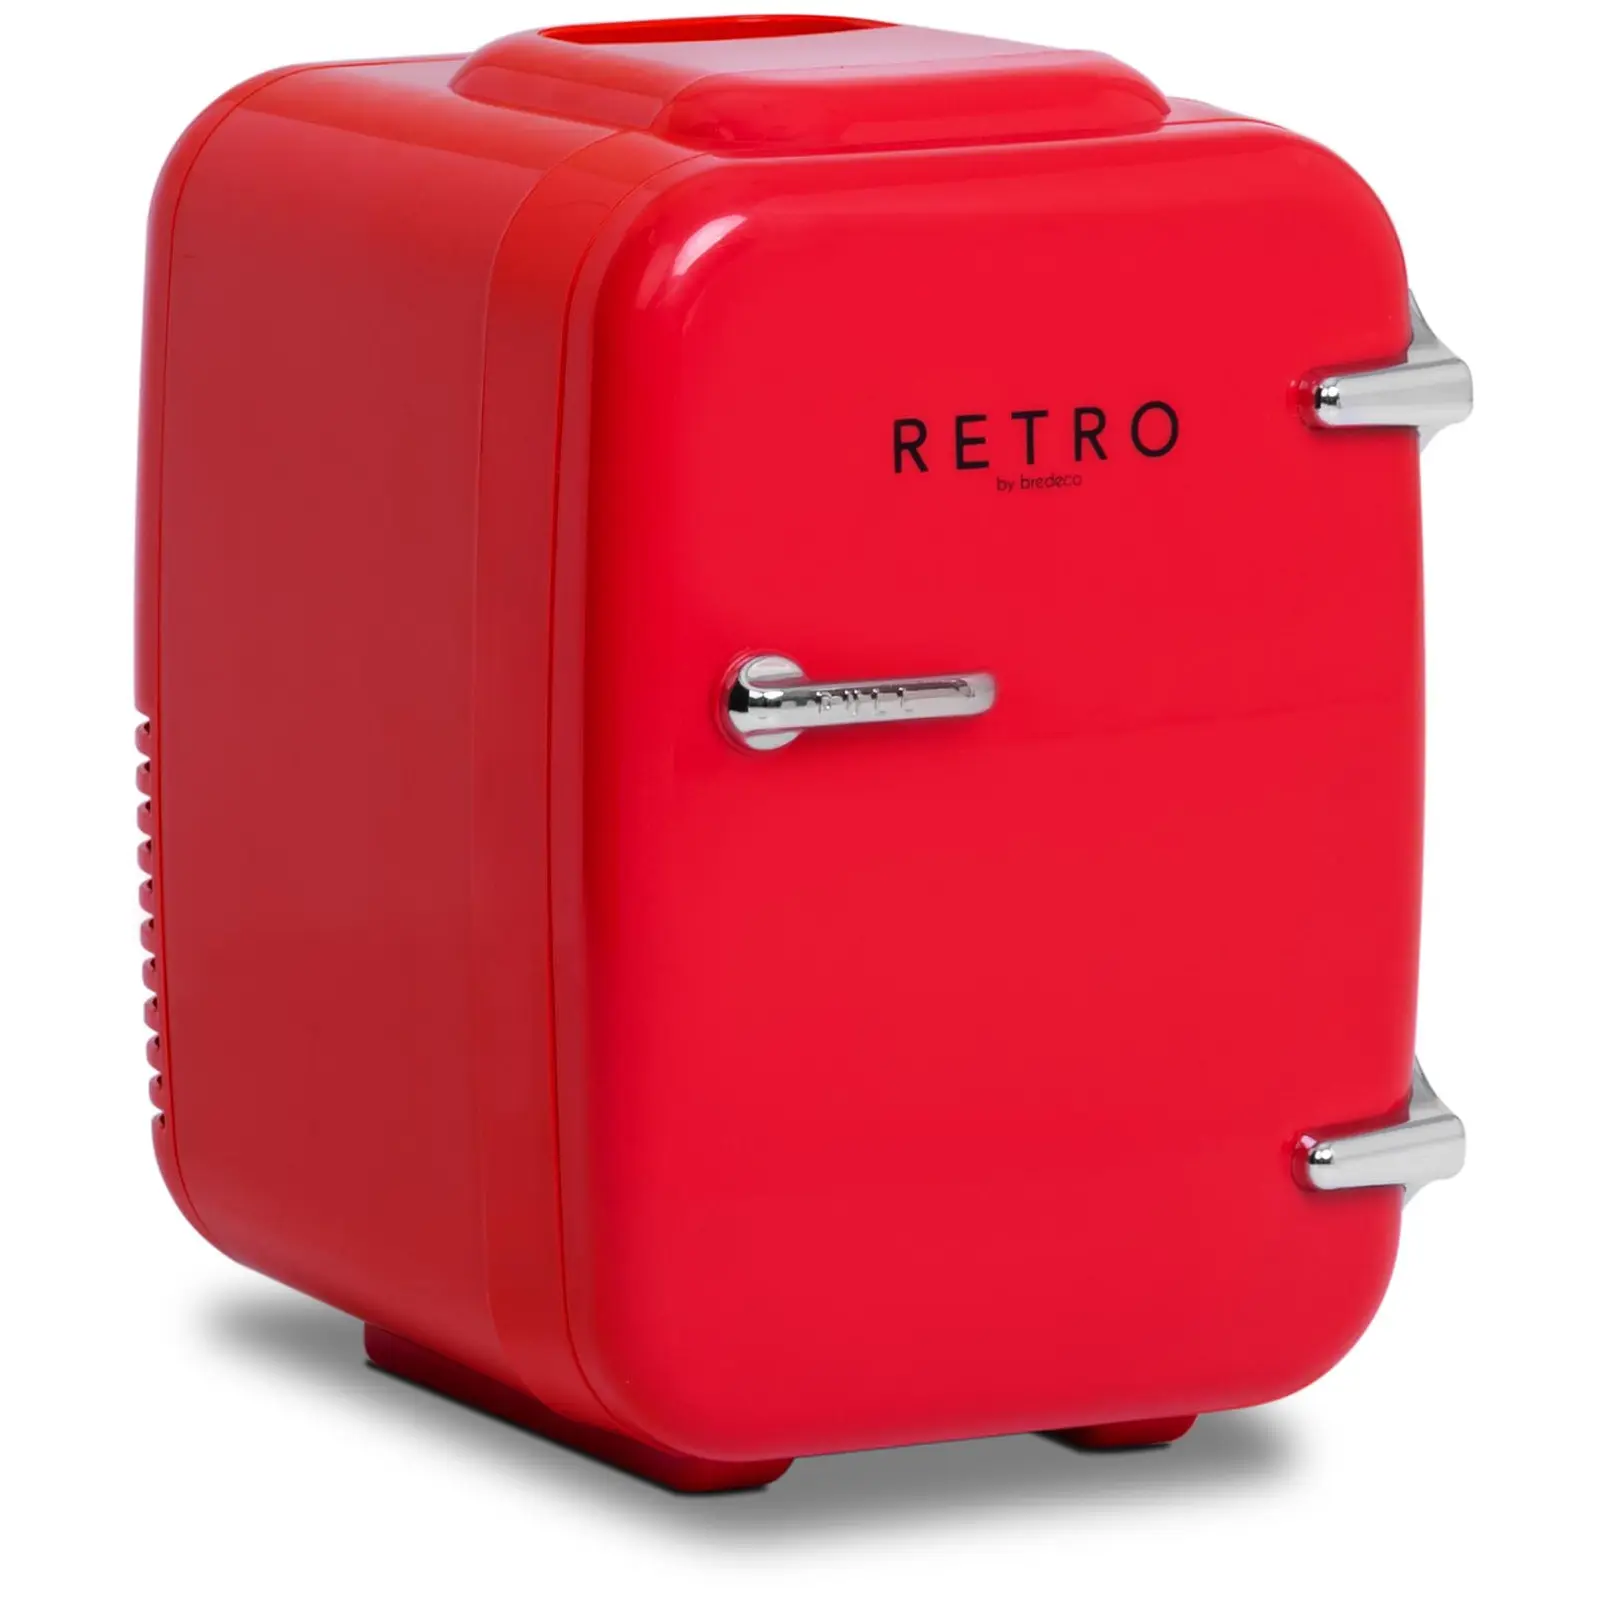 Mini koelkast - 4 L - rood